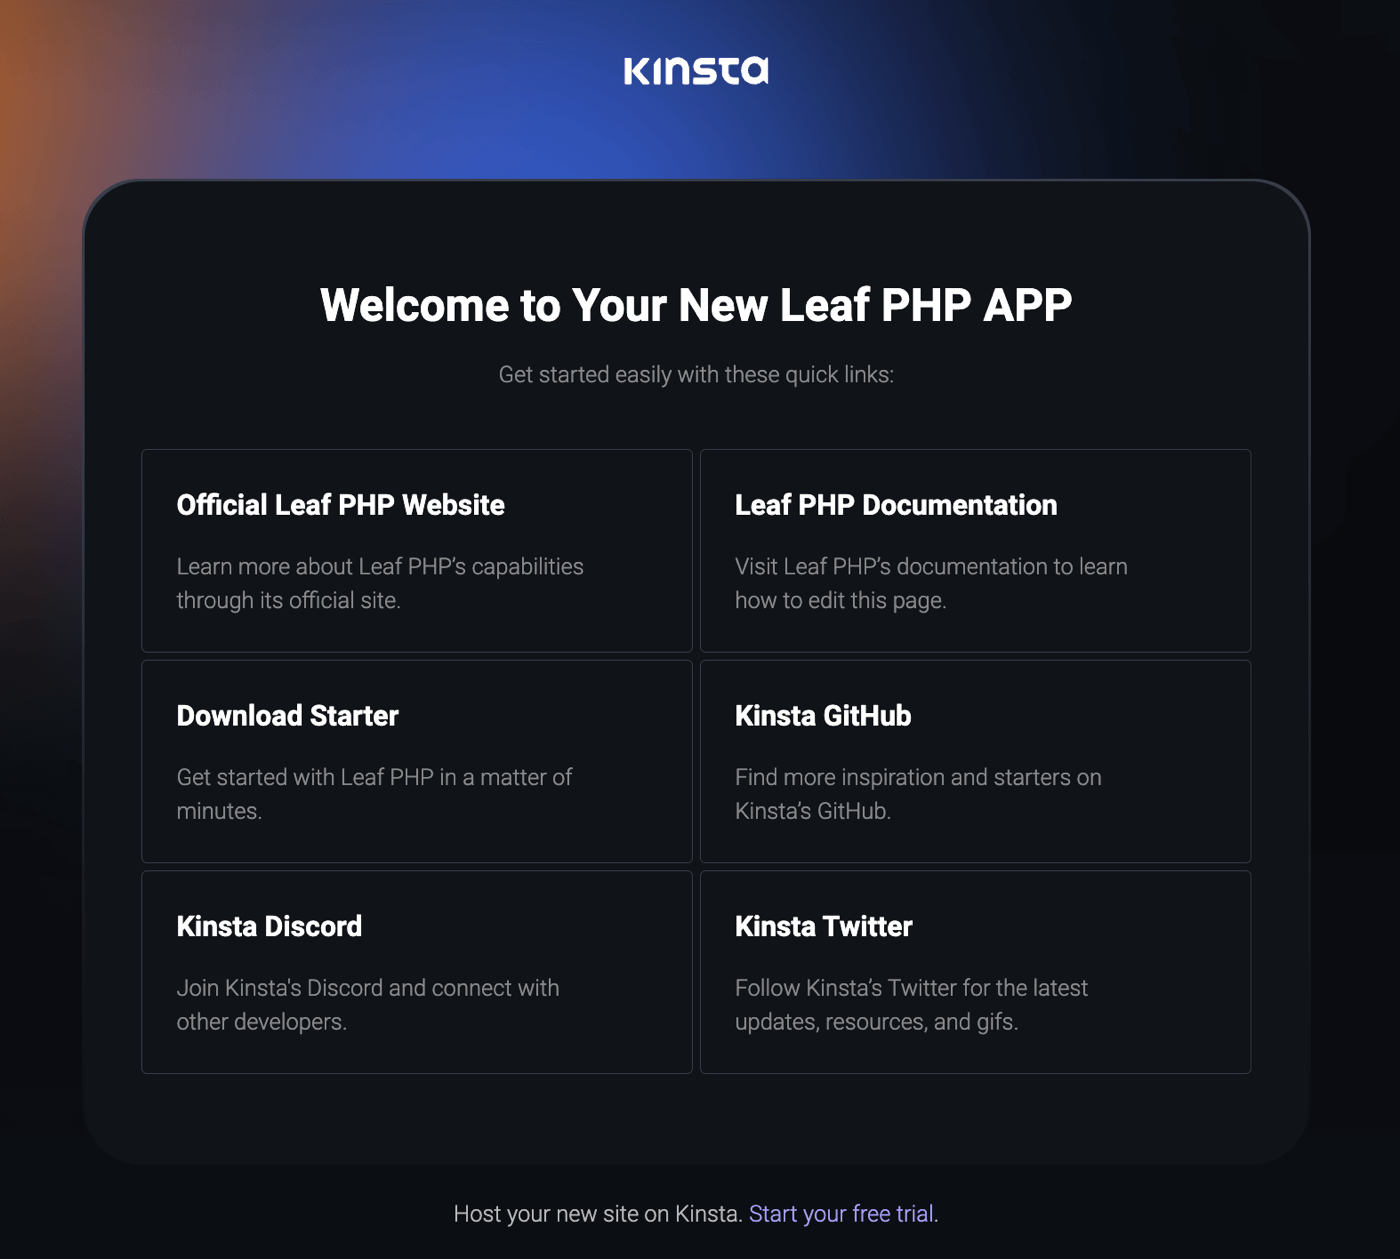 Kinsta-velkomstside efter vellykket installation af Leaf PHP.